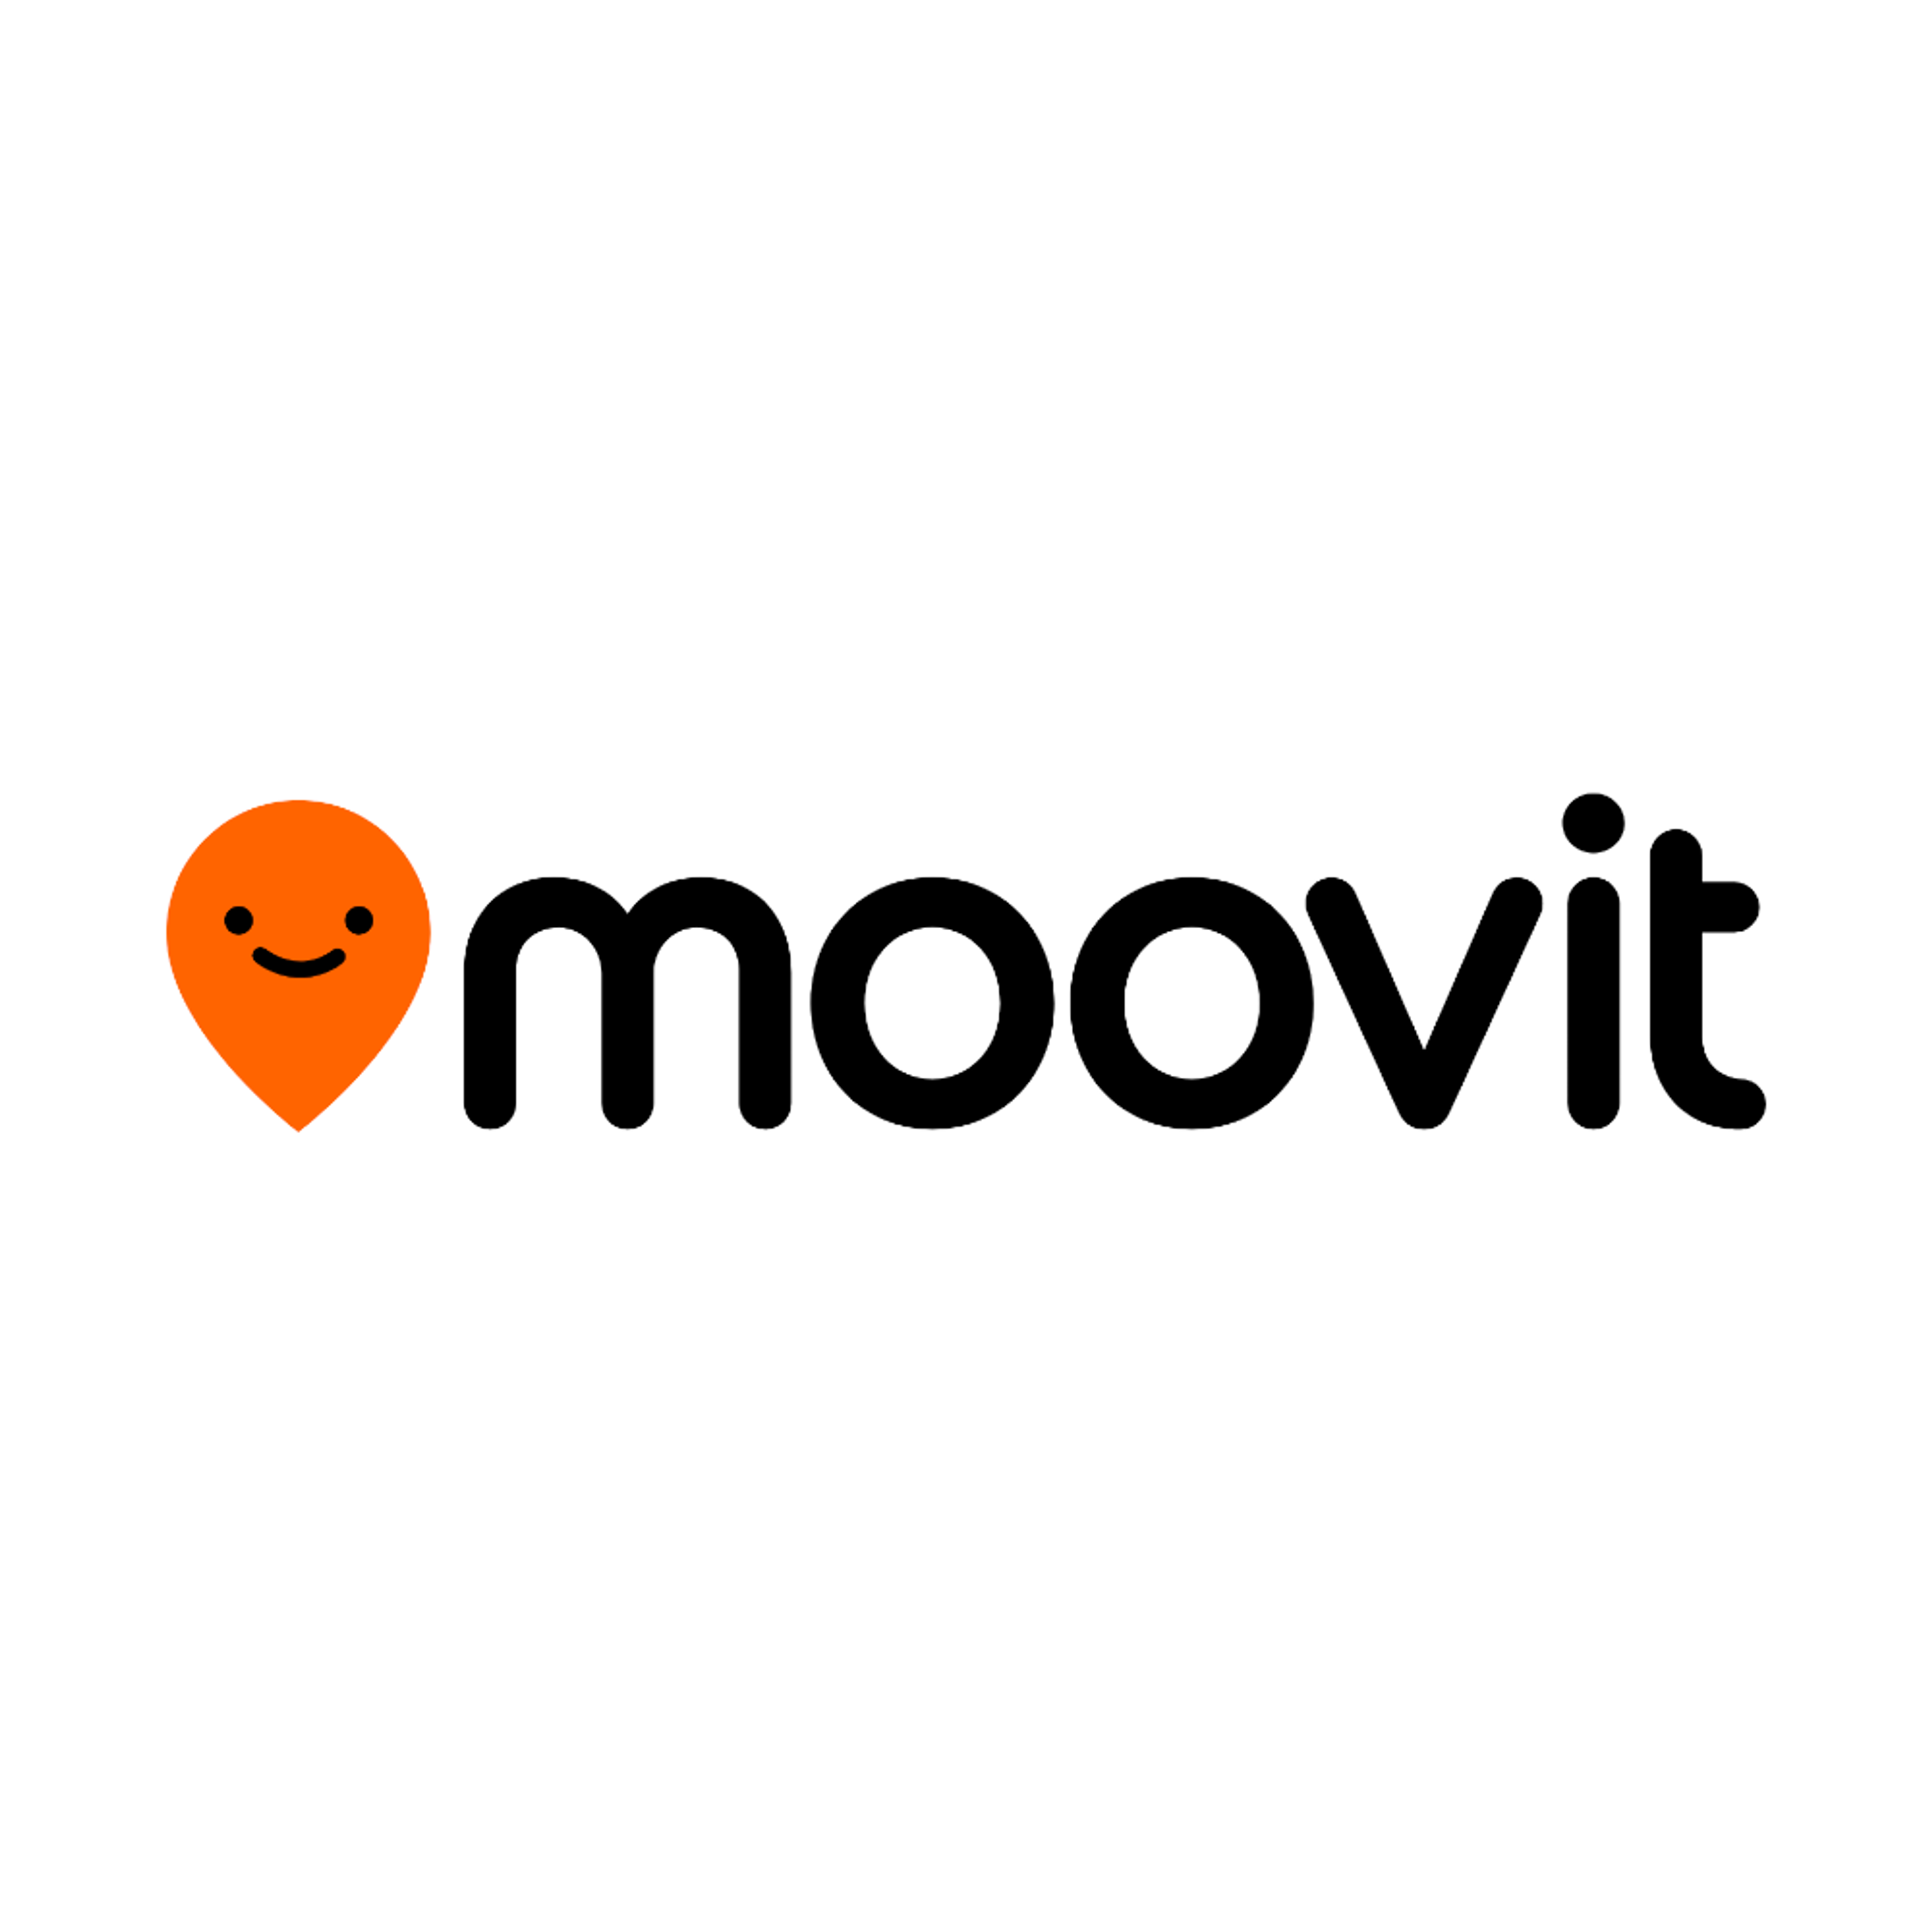 MOOVIT